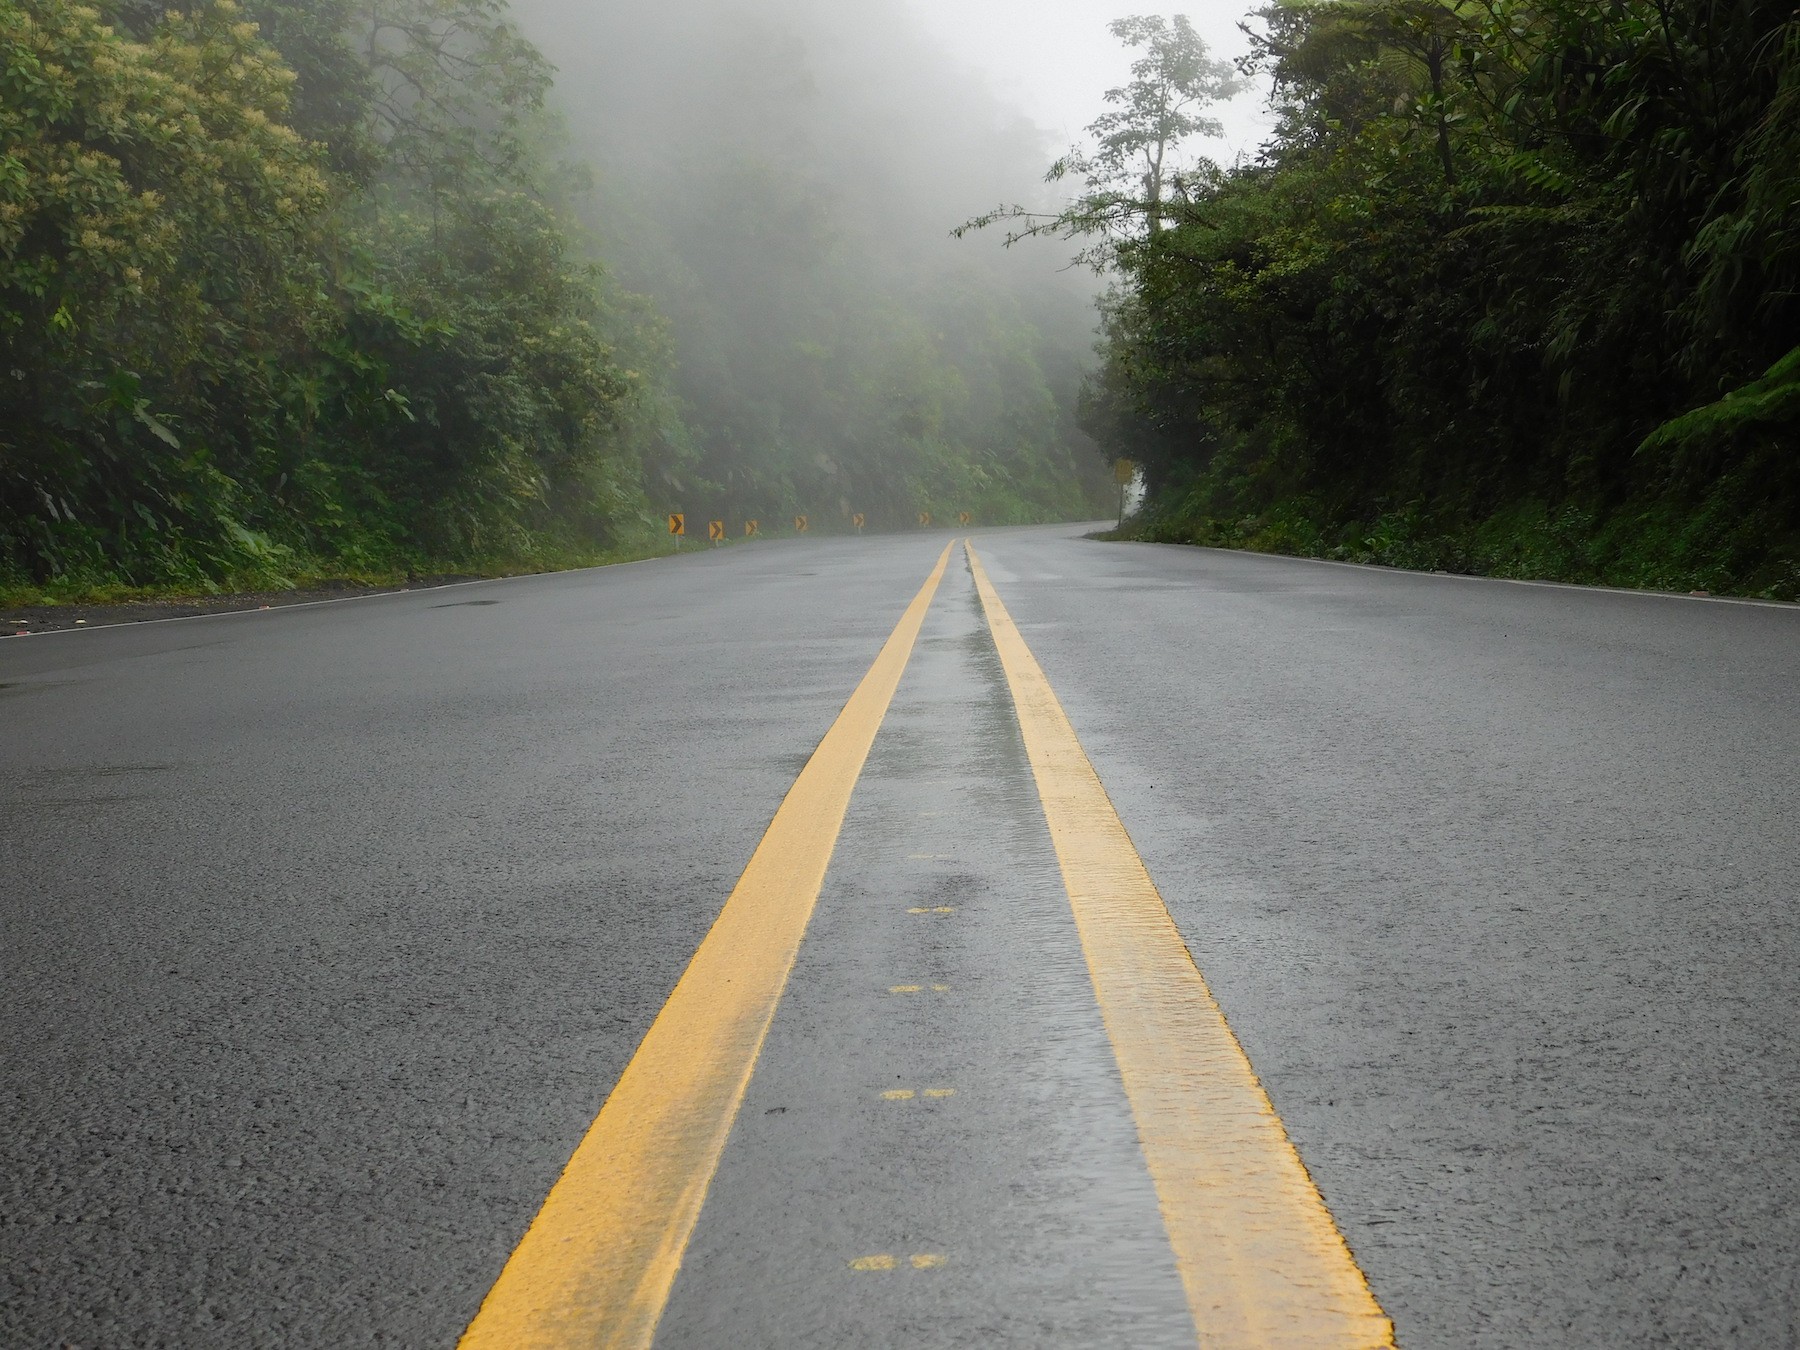 Ruta 32 con cierre preventivo por lluvias; aumentan alerta en Zona Norte, Caribe y Turrialba